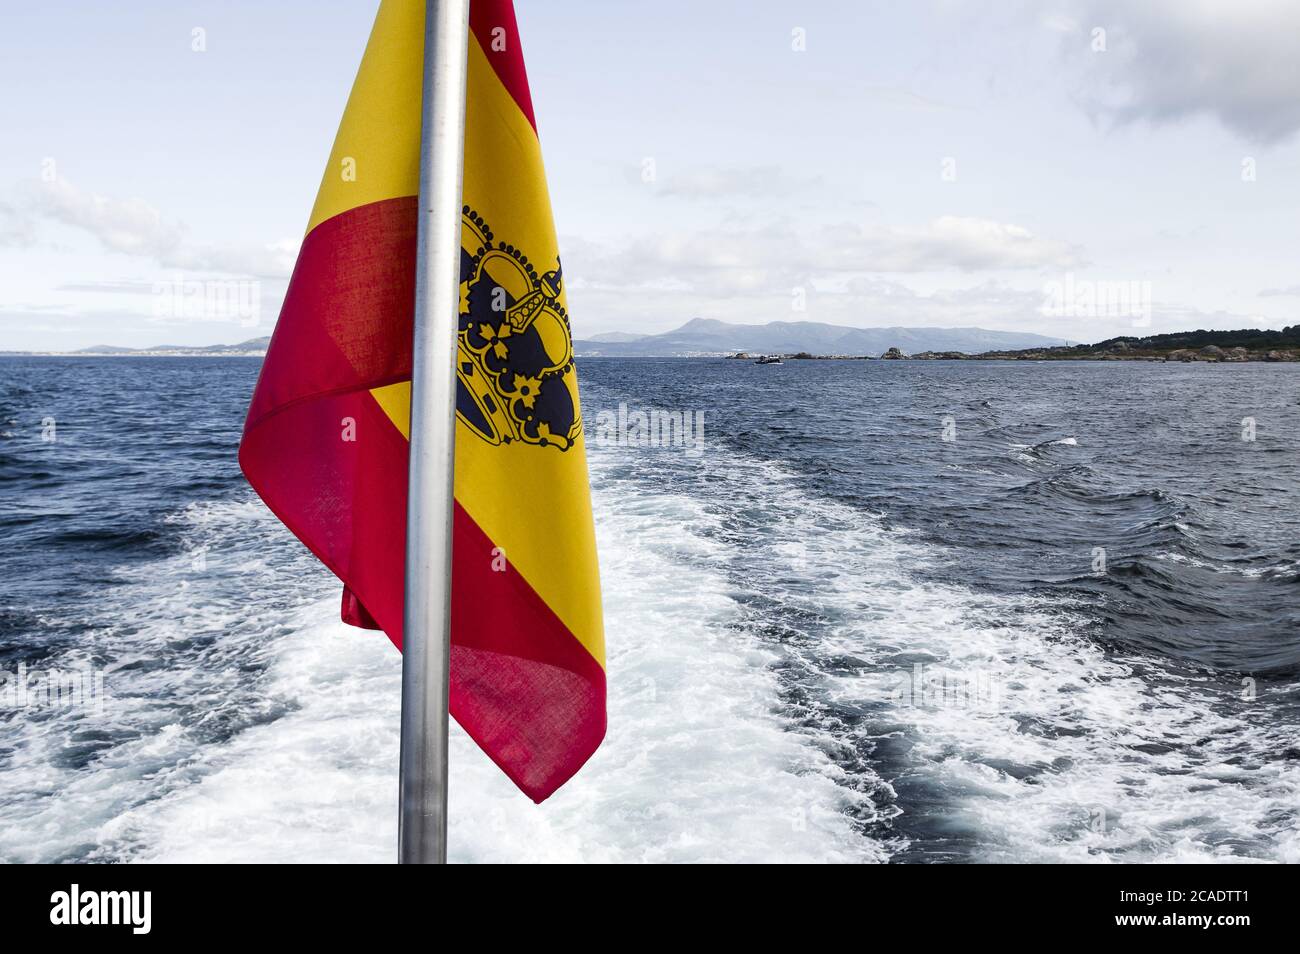 OCEANO ATLANTICO, COSTA DE GALICIA, SPAIN - Aug 07, 2018: Bandera de Espana situada en la popa de un barco a motor que navega por la costa gallega en Stock Photo